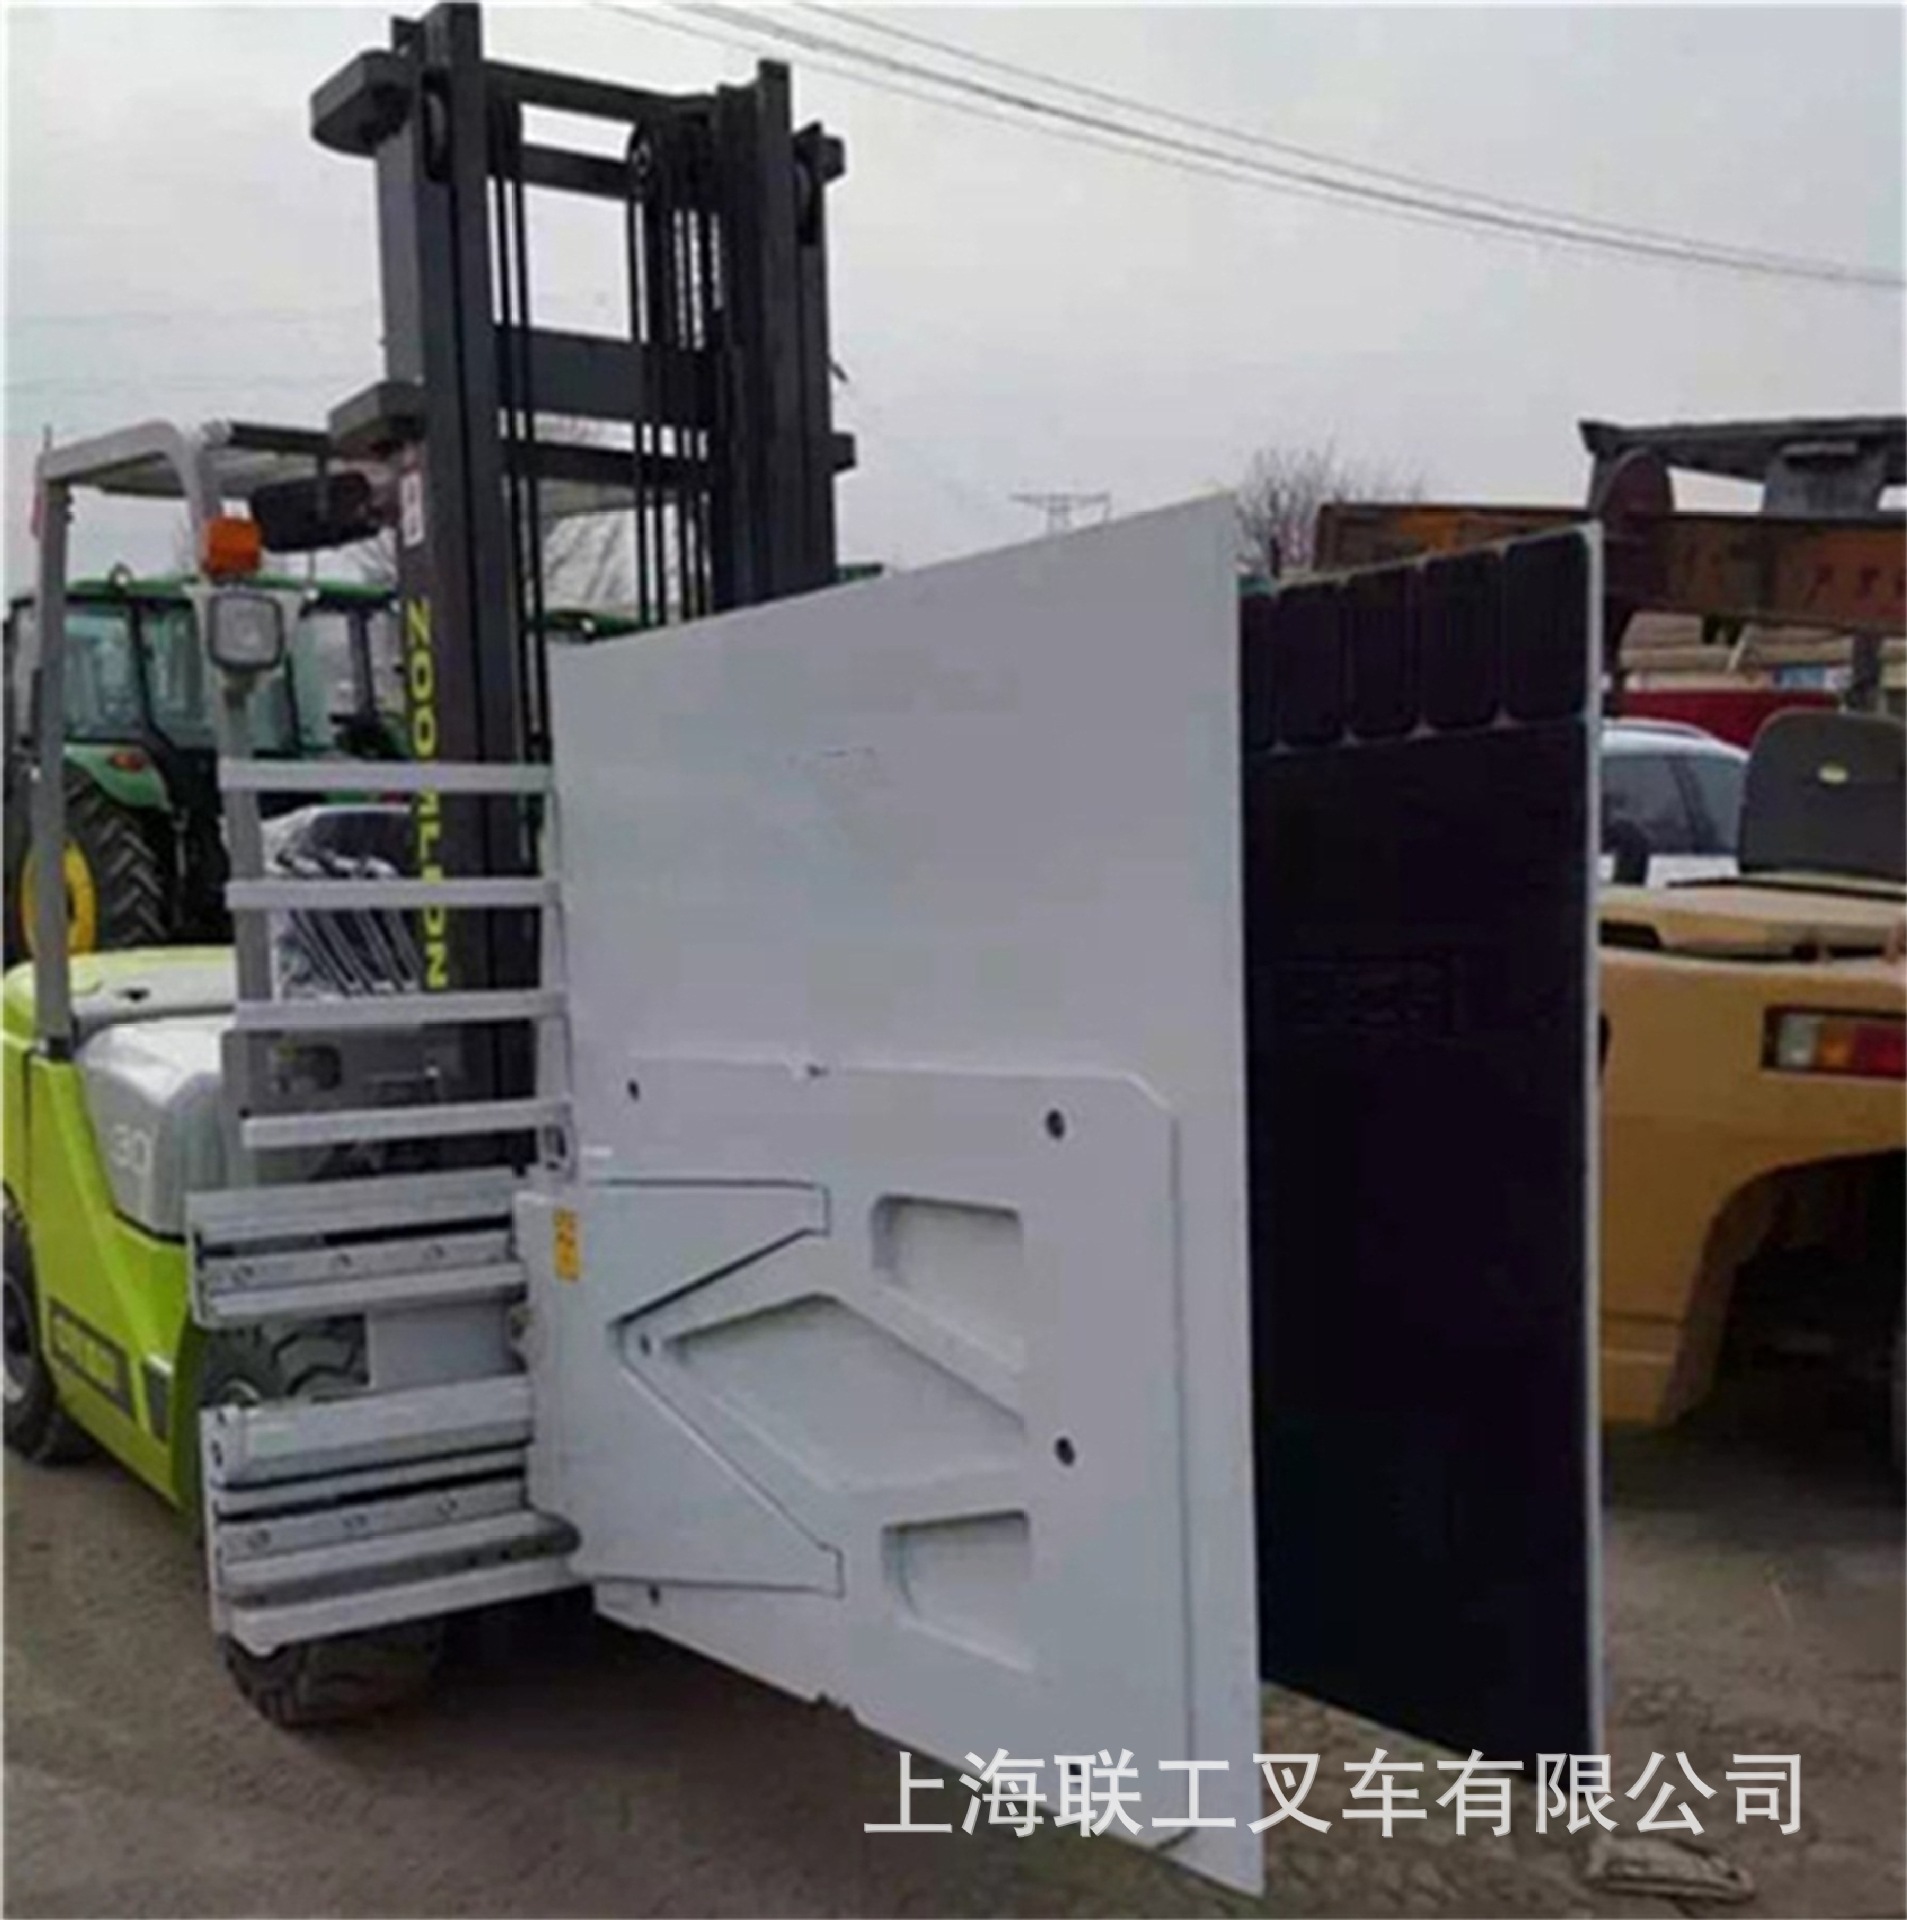 供应山东优质二手合力柴油3吨冰箱夹叉车杭州4.5米圆抱夹叉车